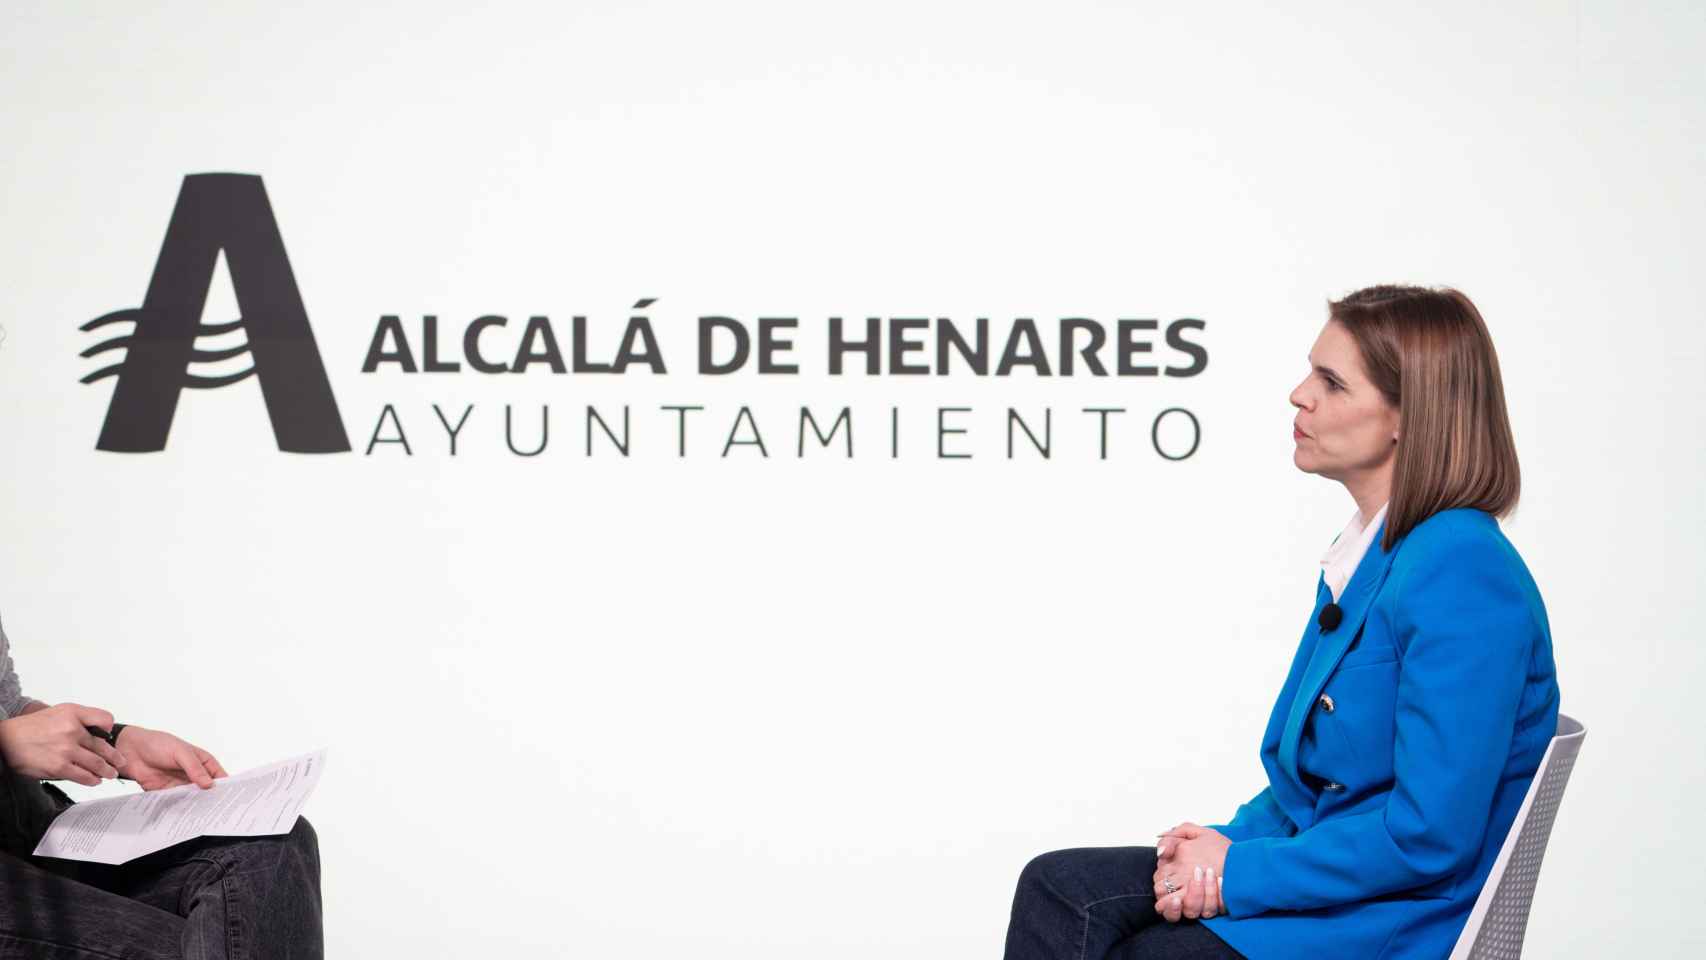 La alcaldesa desconoce cuántos migrantes se han quedado en Alcalá de Henares sin supervisión